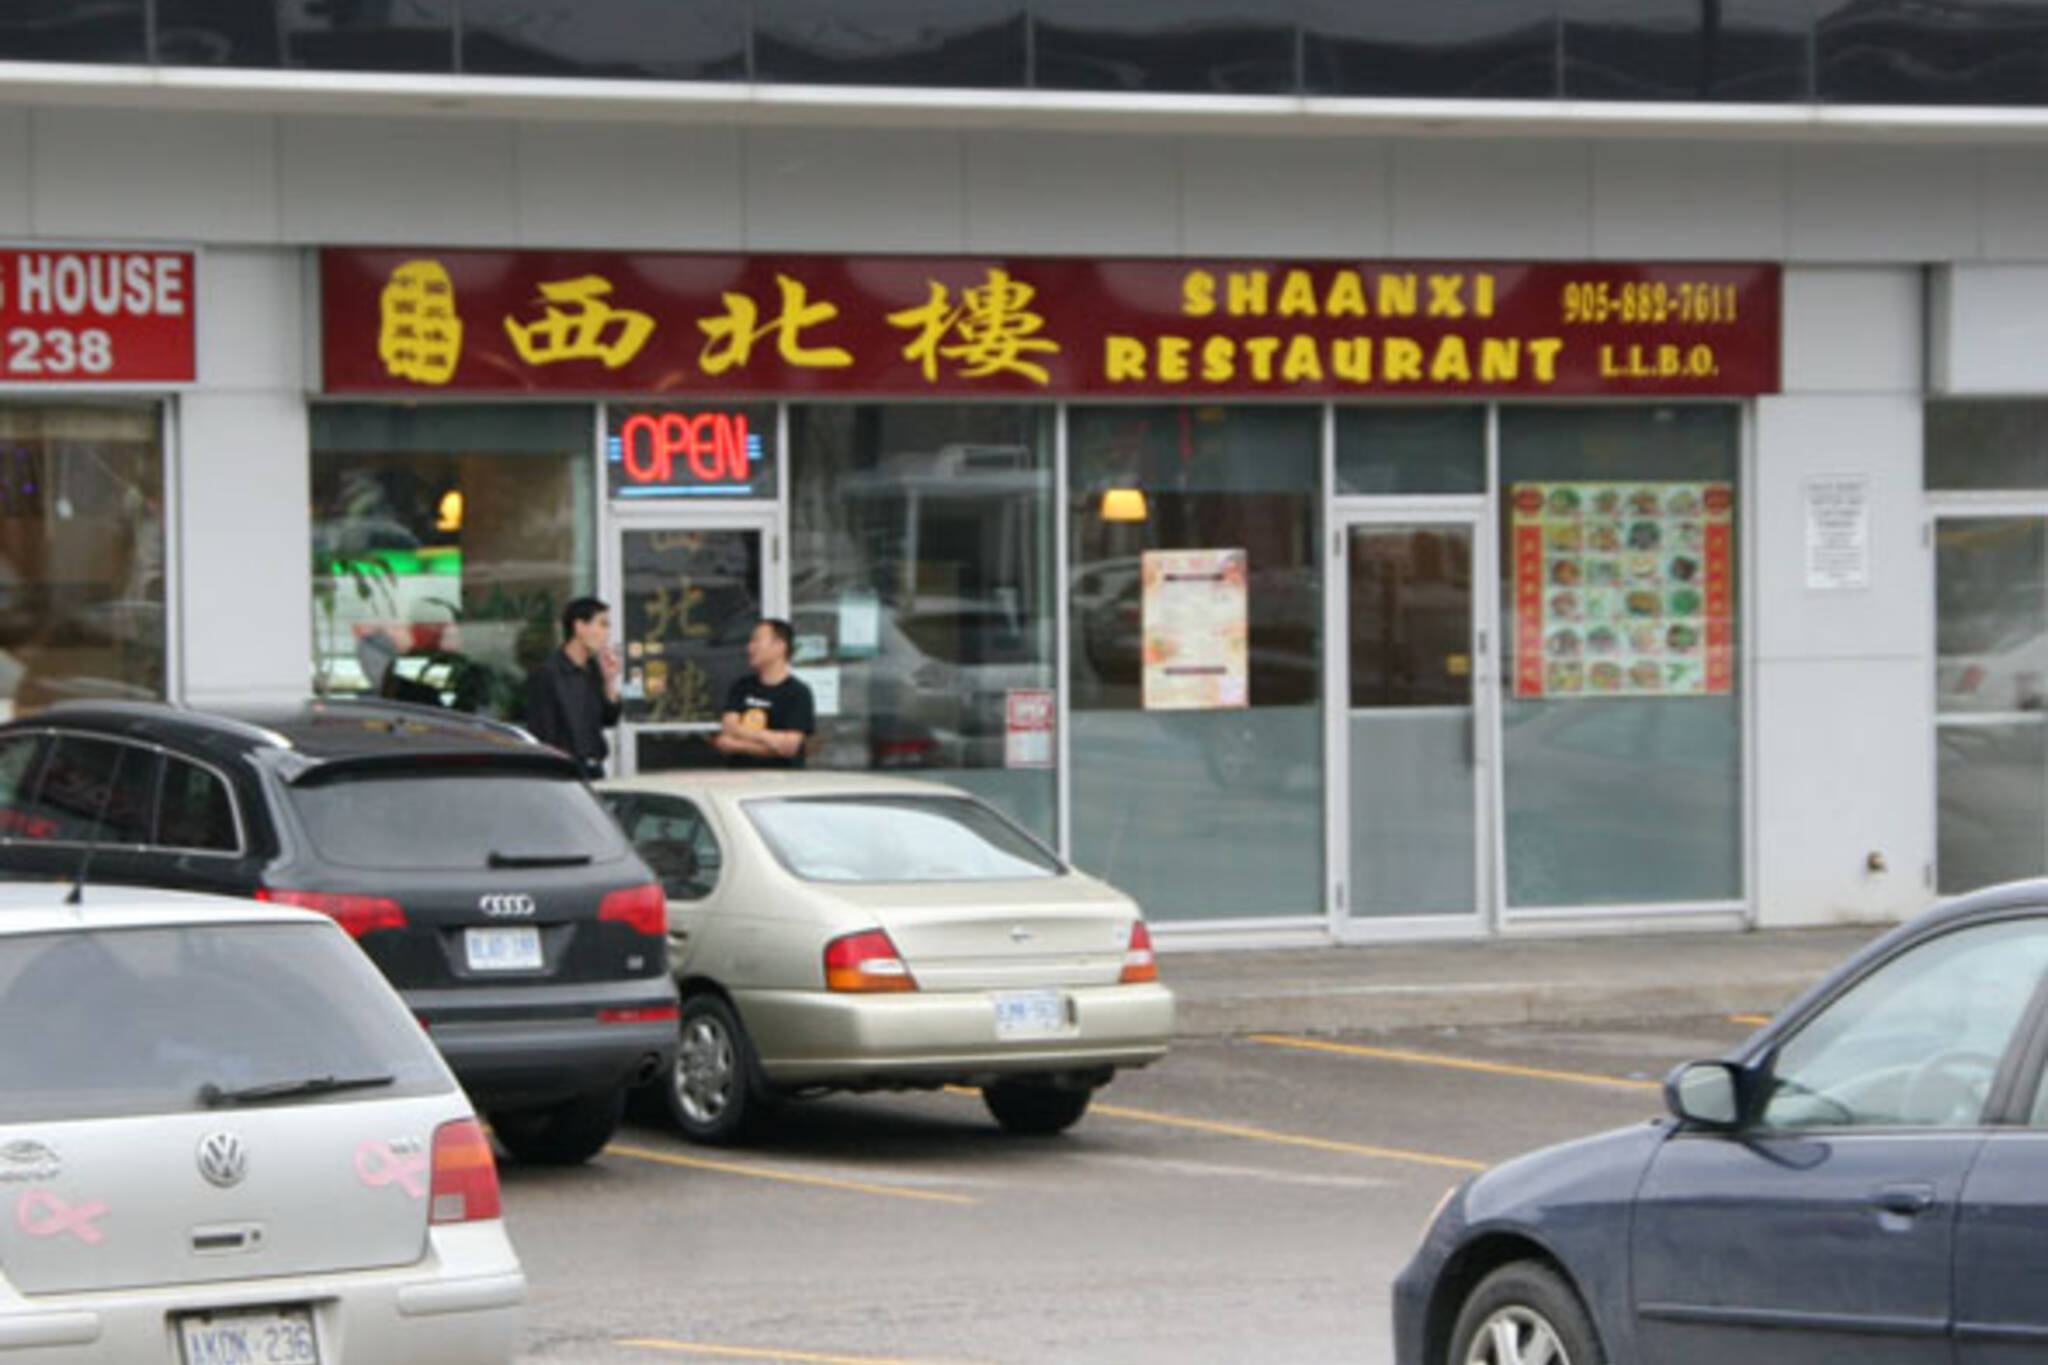 Shaanxi Restaurant